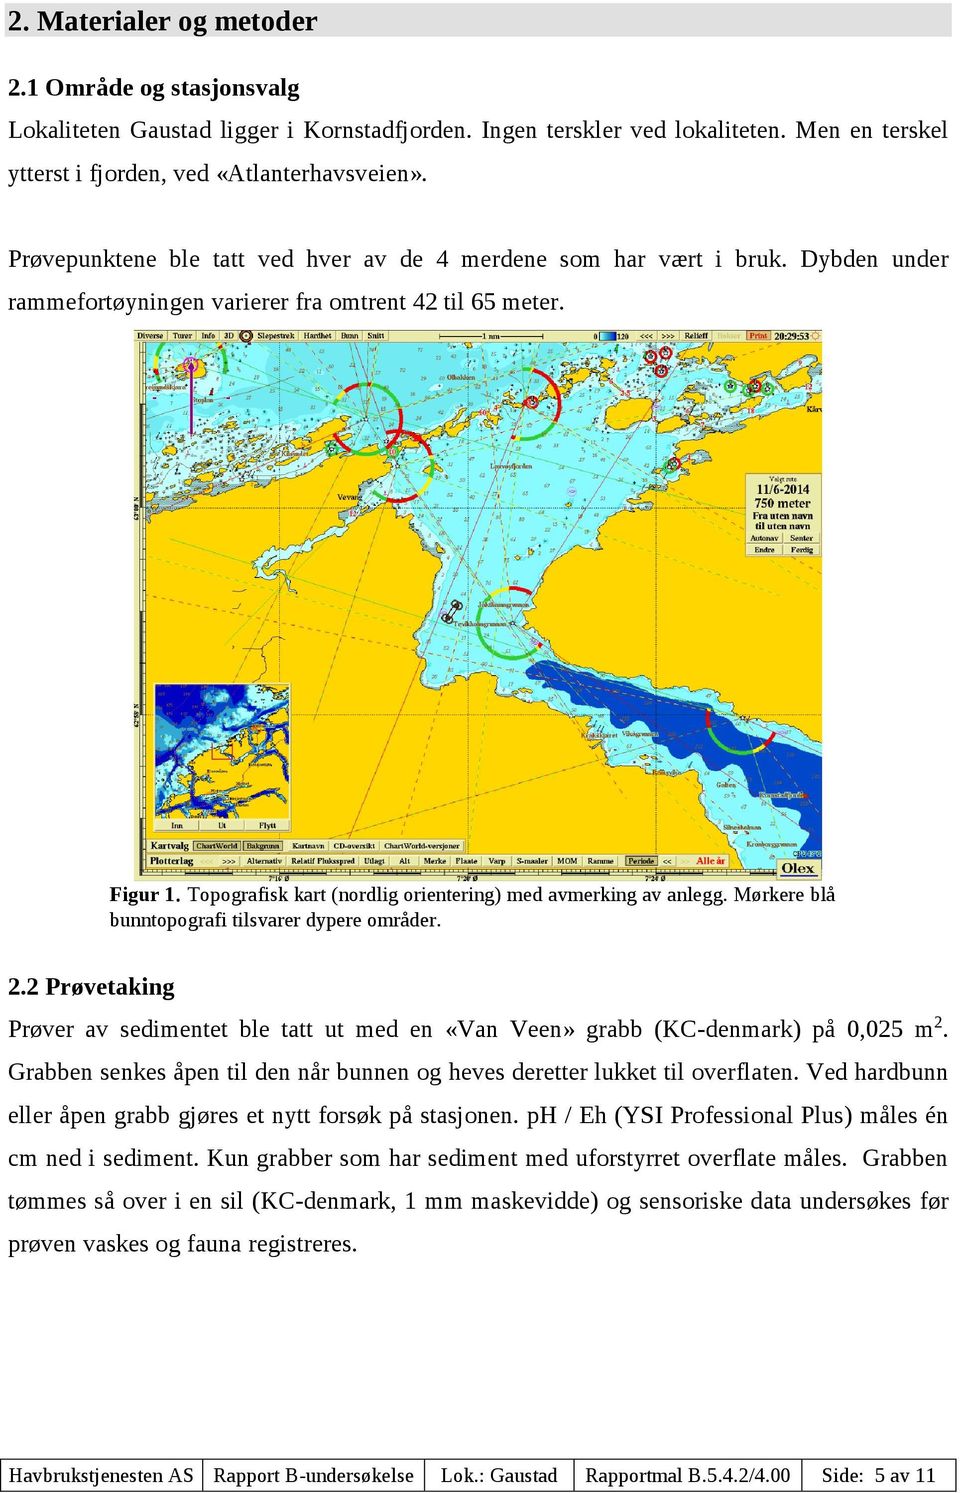 Topografisk kart (nordlig orientering) med avmerking av anlegg. Mørkere blå bunntopografi tilsvarer dypere områder. 2.